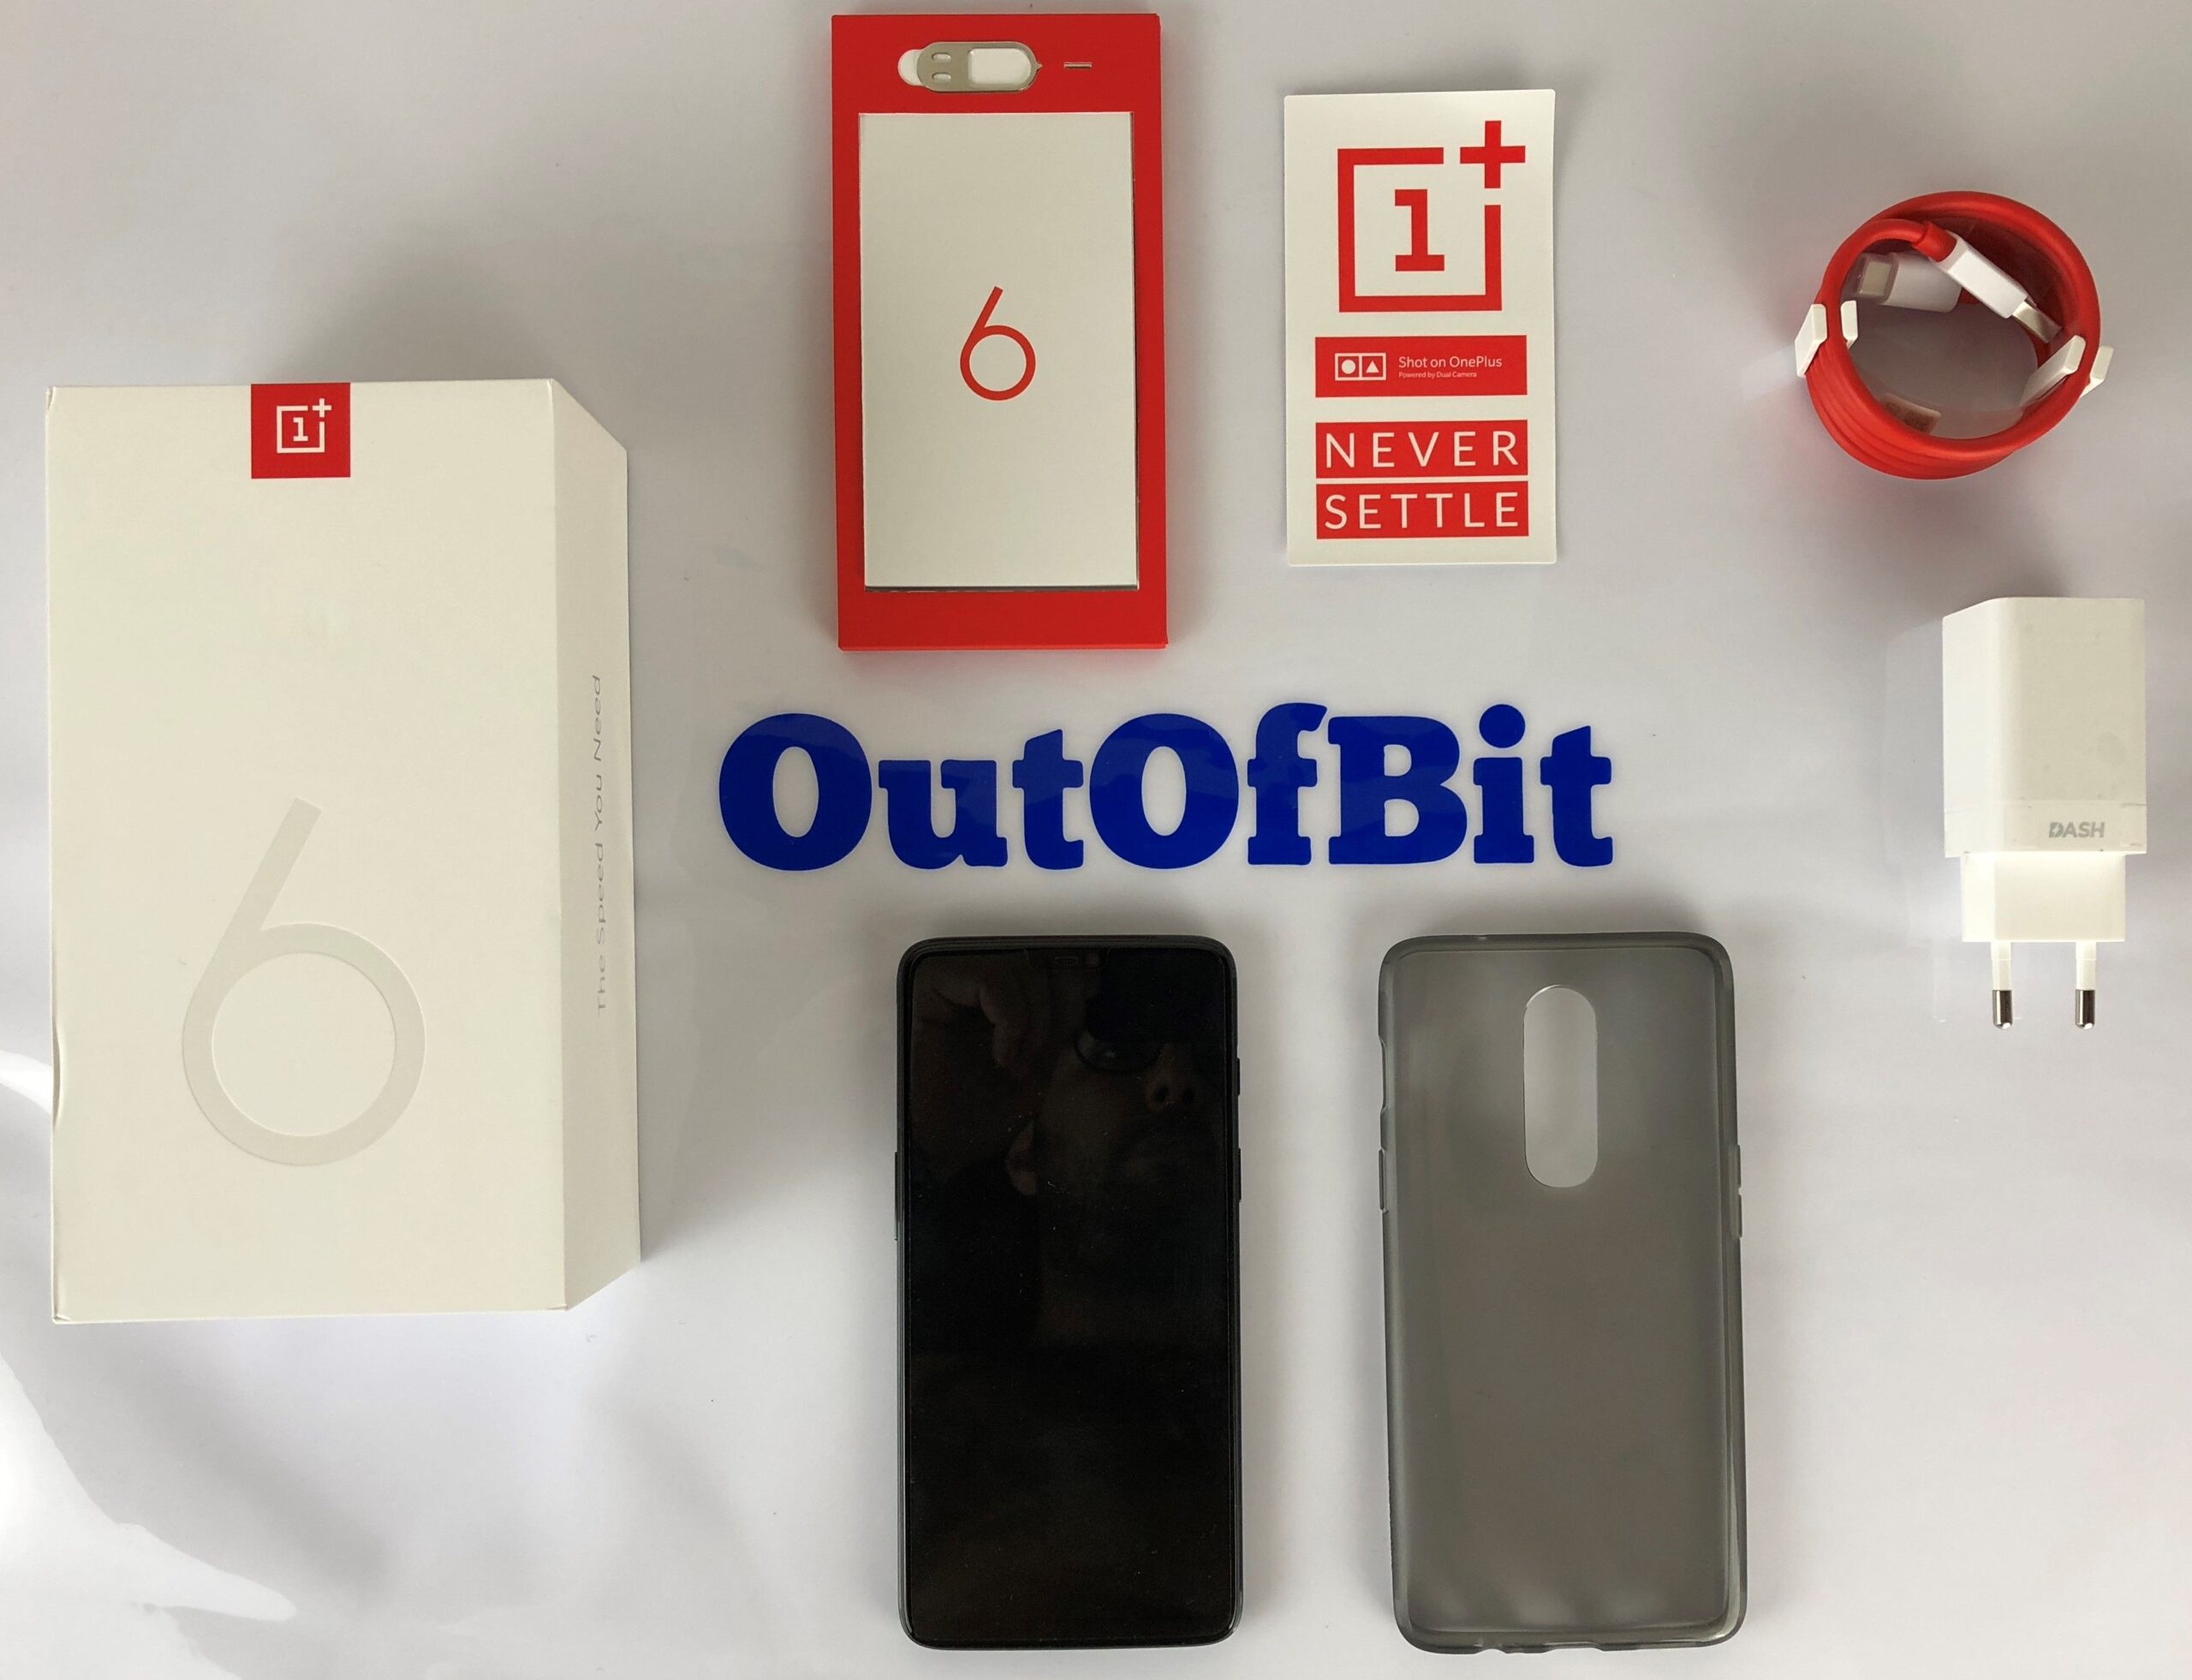 oneplus 6 - contenuto confezione - outofbit